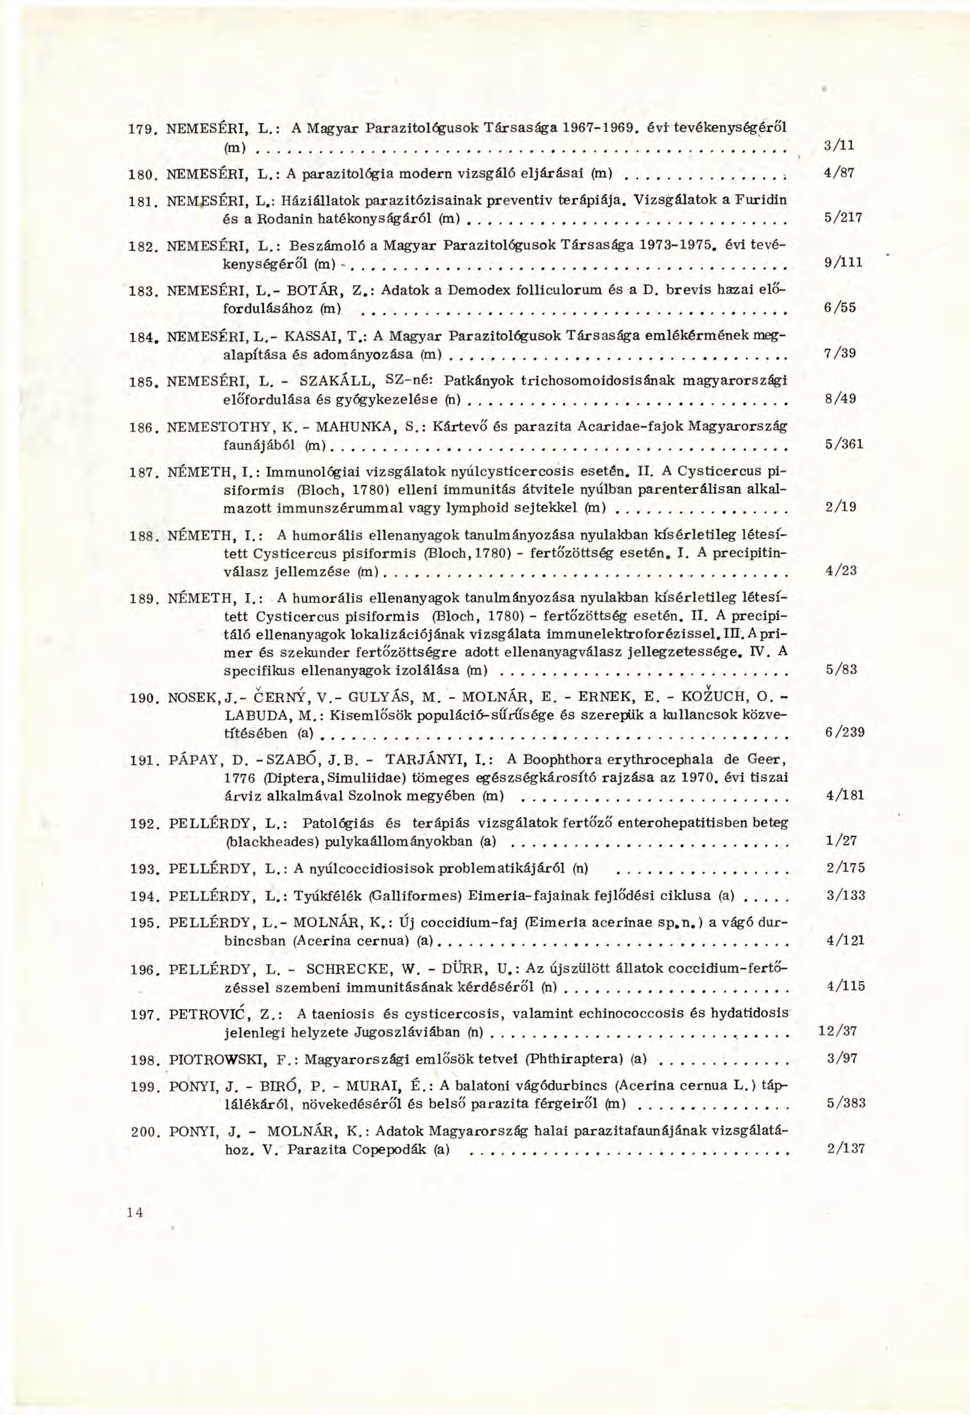 179. NEMESÉRI, L. : A Magyar Parazitológusok Társasága 1967-1969. évi tevékenységéről (m) \.. 3/11 180. NEMESÉRI, L. : A parazitológia modern vizsgáló eljárásai (m) 4/87 181.